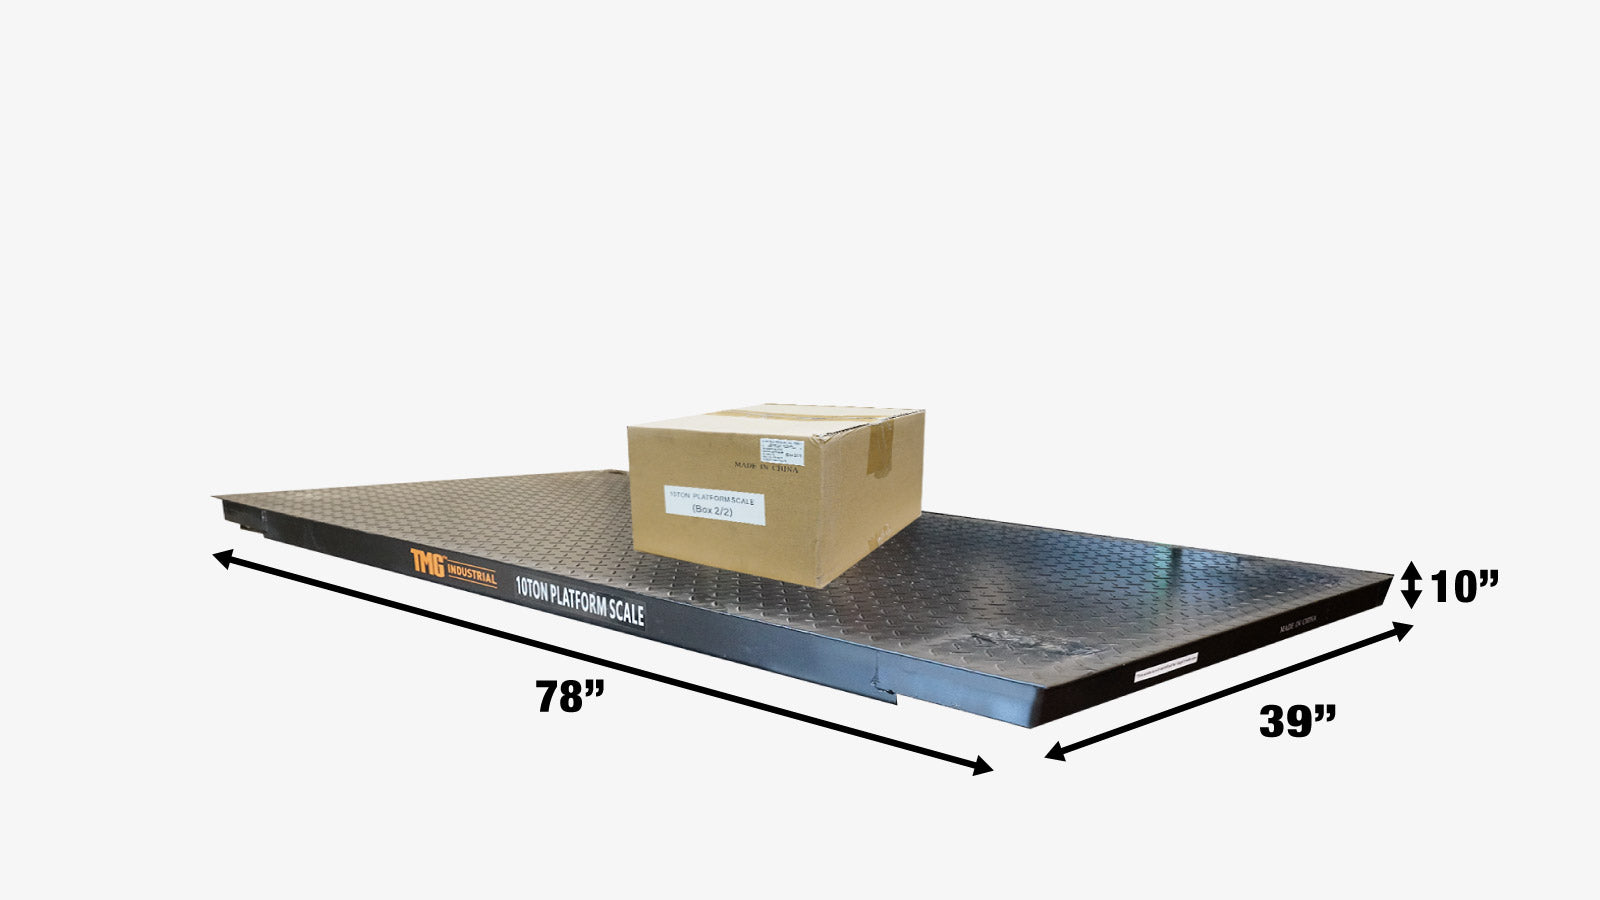 TMG Industrial 10 Ton High-Capacity Floor Scale, Digital Display, 22,000 lb Capacity, 110V/60Hz, Full Capacity Tare, Auto Zero Tracking, TMG-FS10-shipping-info-image